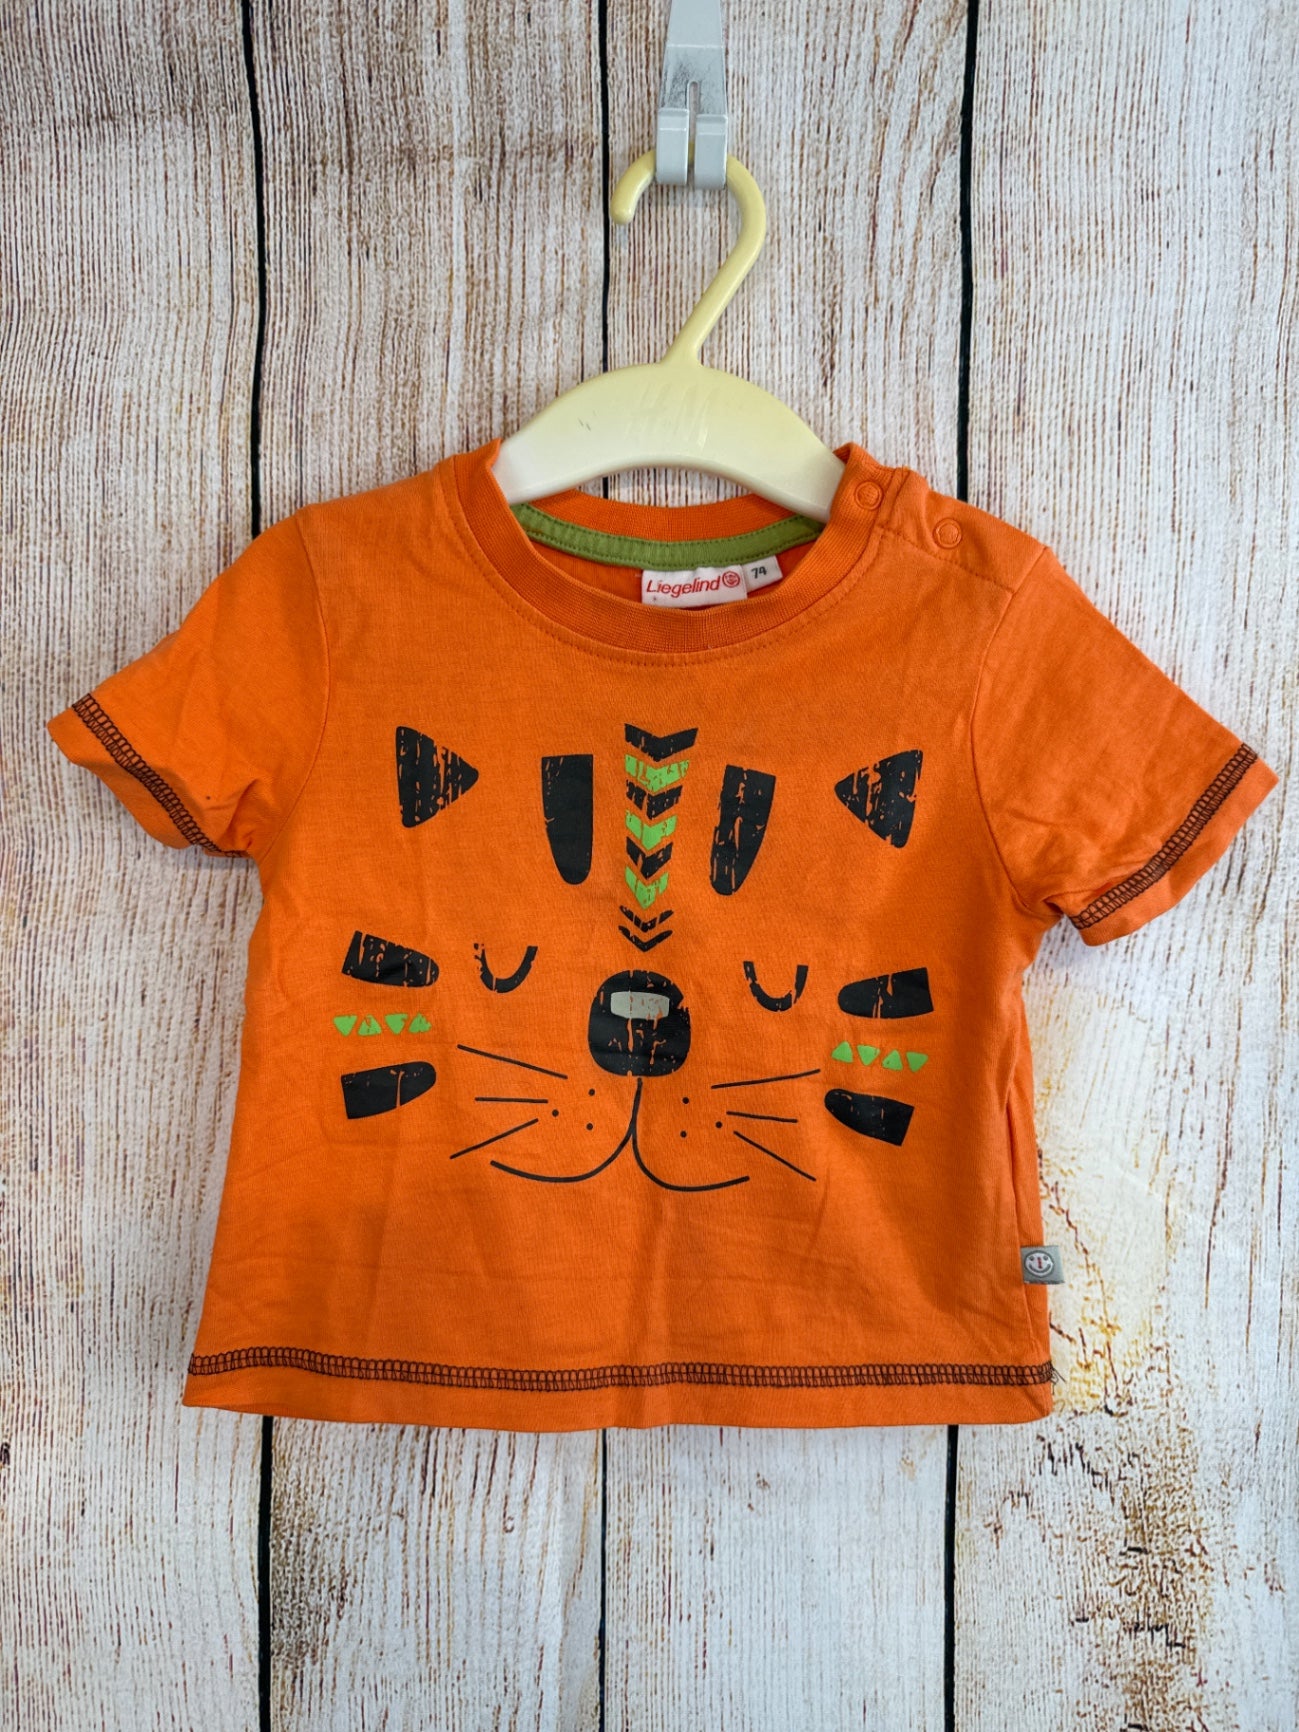 Liegelind T-Shirt Orange m. Tigergesicht Gr. 74